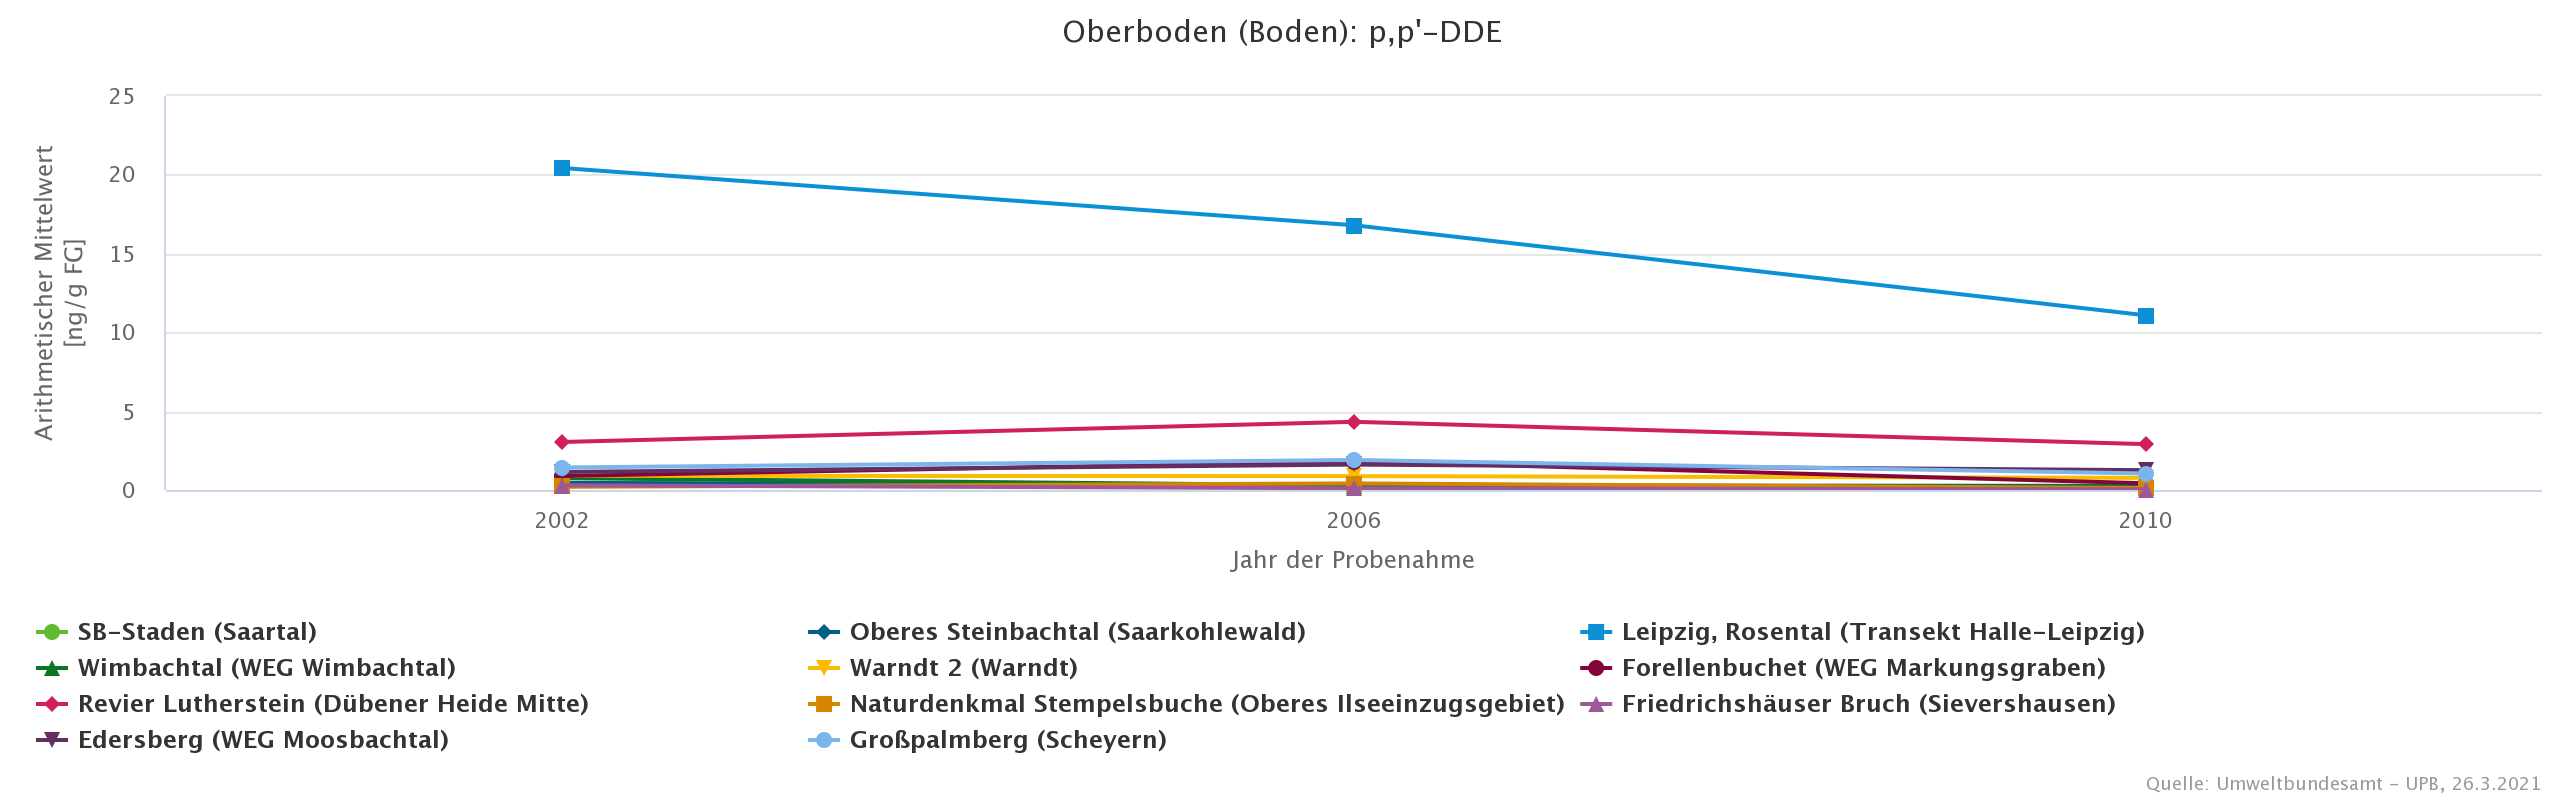 Deutlich höhere DDE-Belastung in Böden aus der ehemaligen DDR